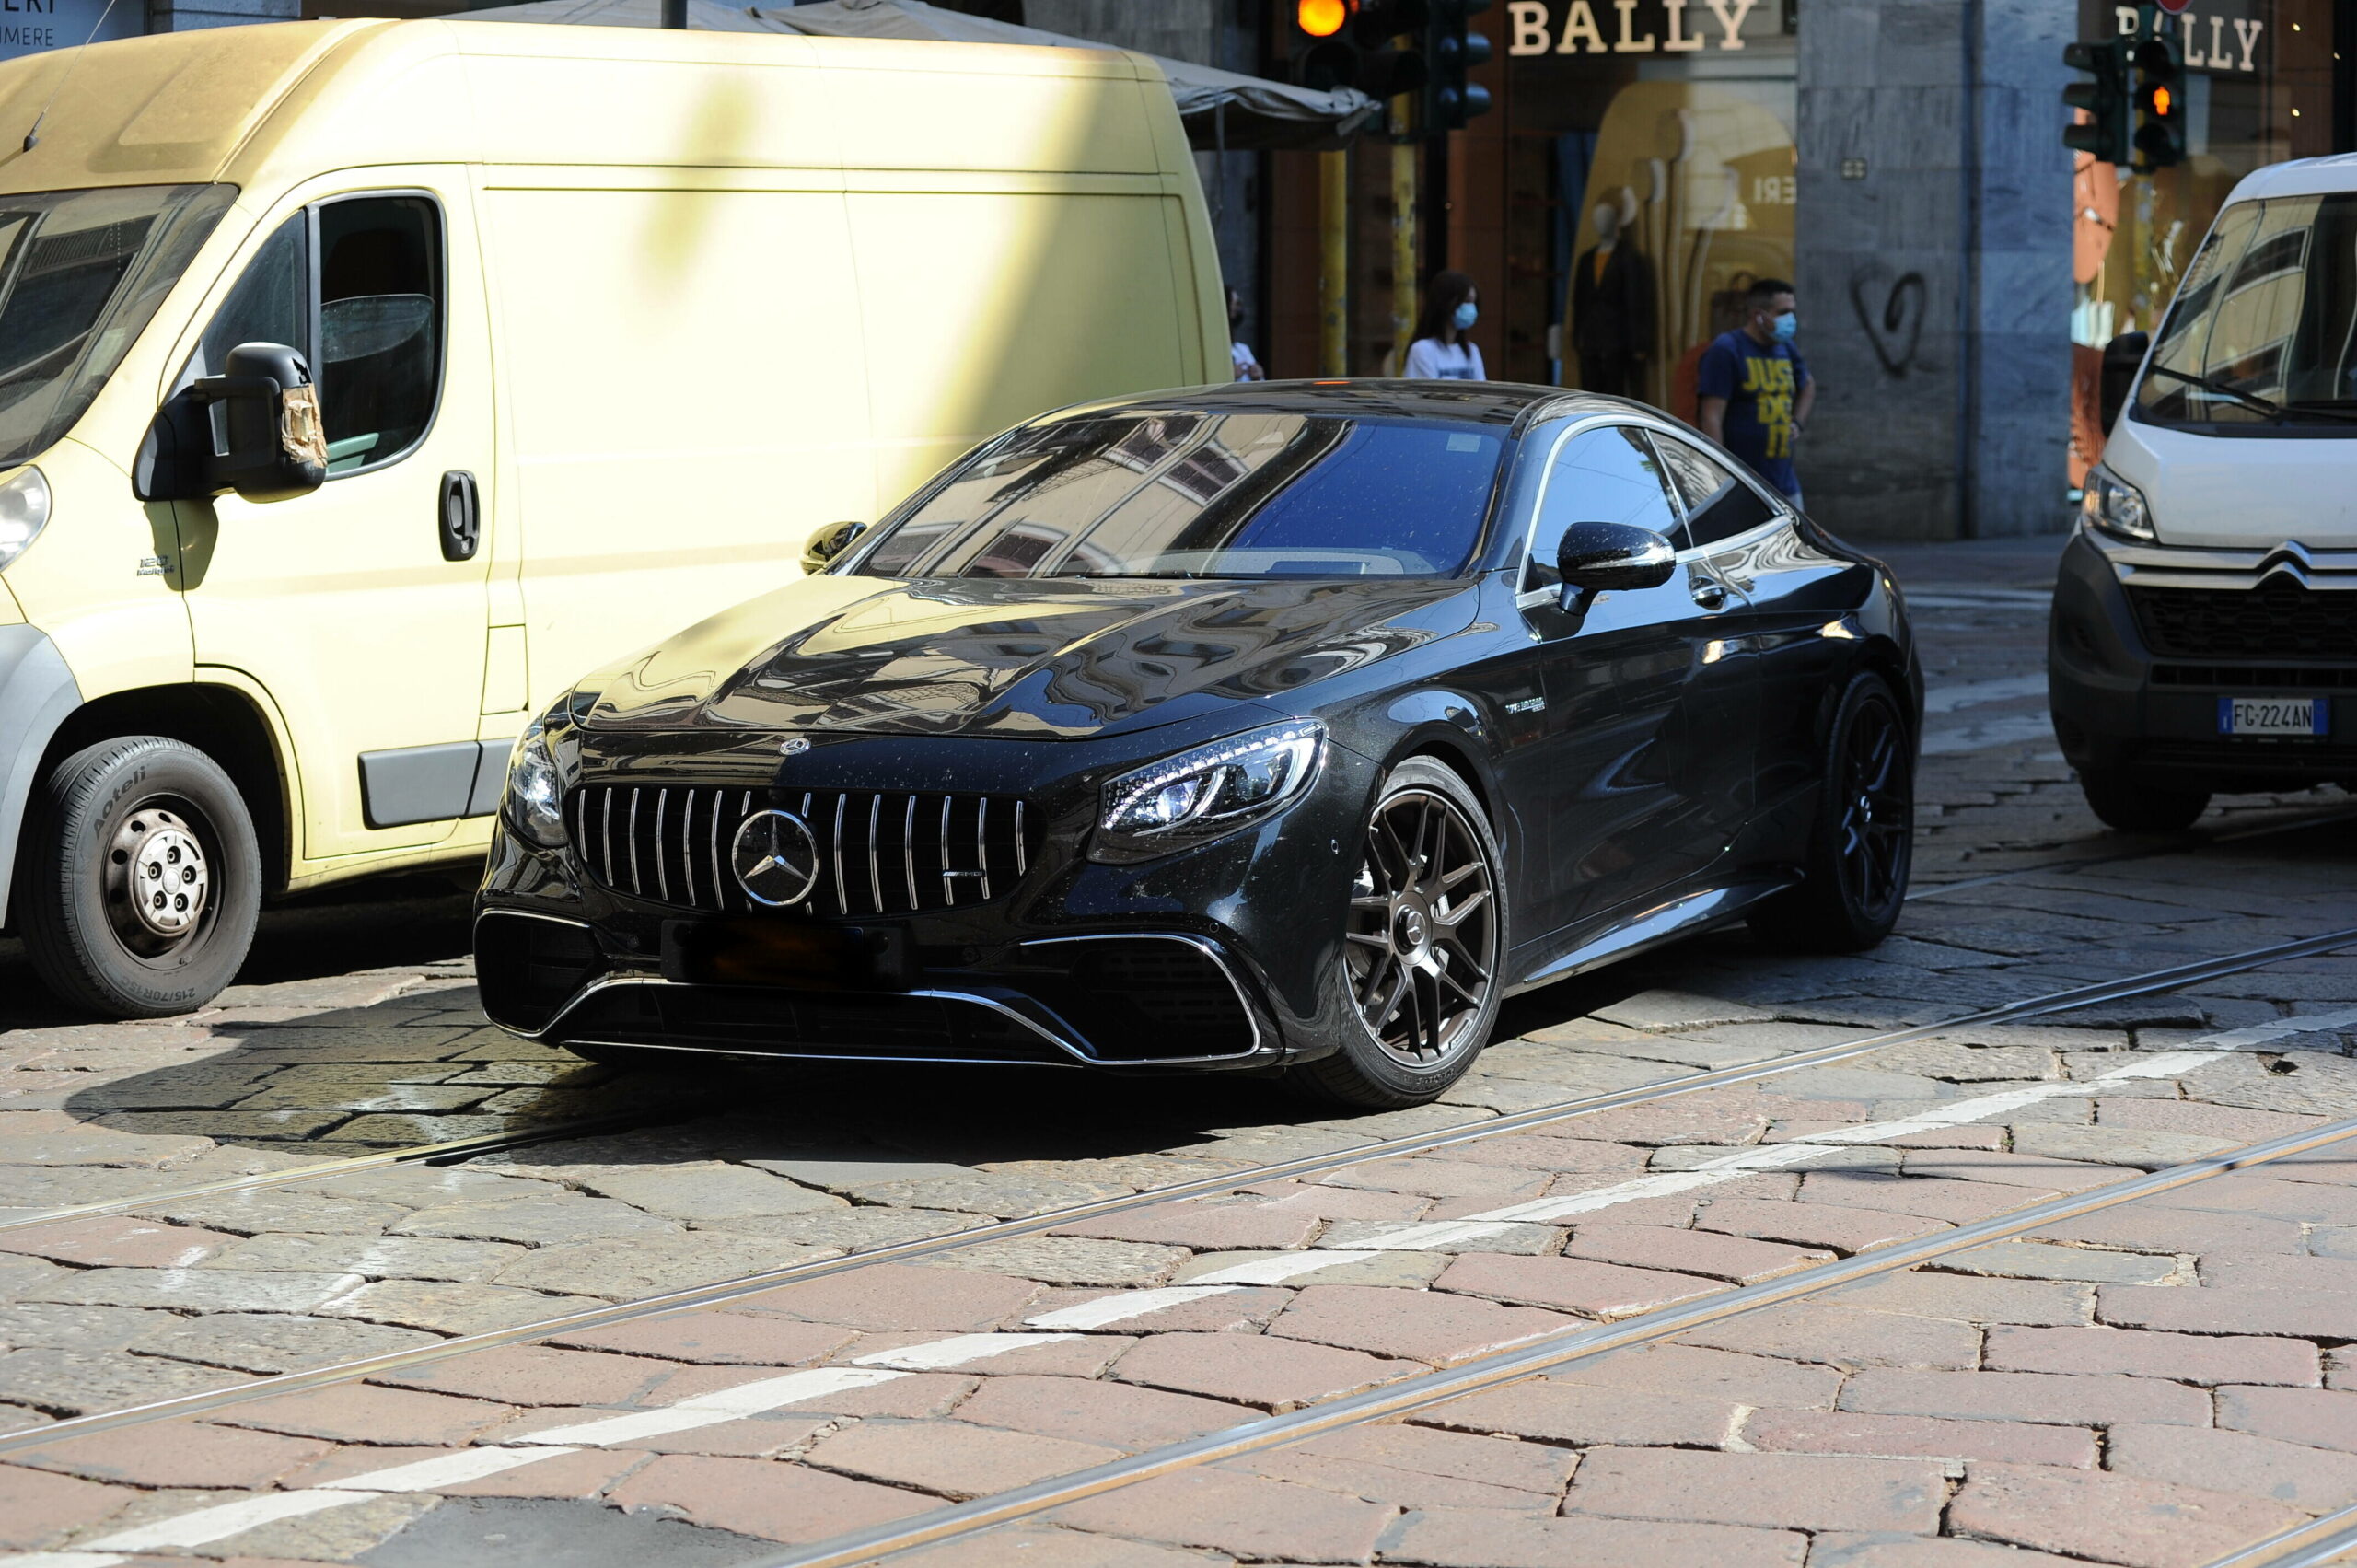 Der Mercedes Benz AMG S 63 wurde in der Zeit wischen dem 7. und 22 Juni von einem Parkplatz in Glinde gestohlen. (Symbolfoto)